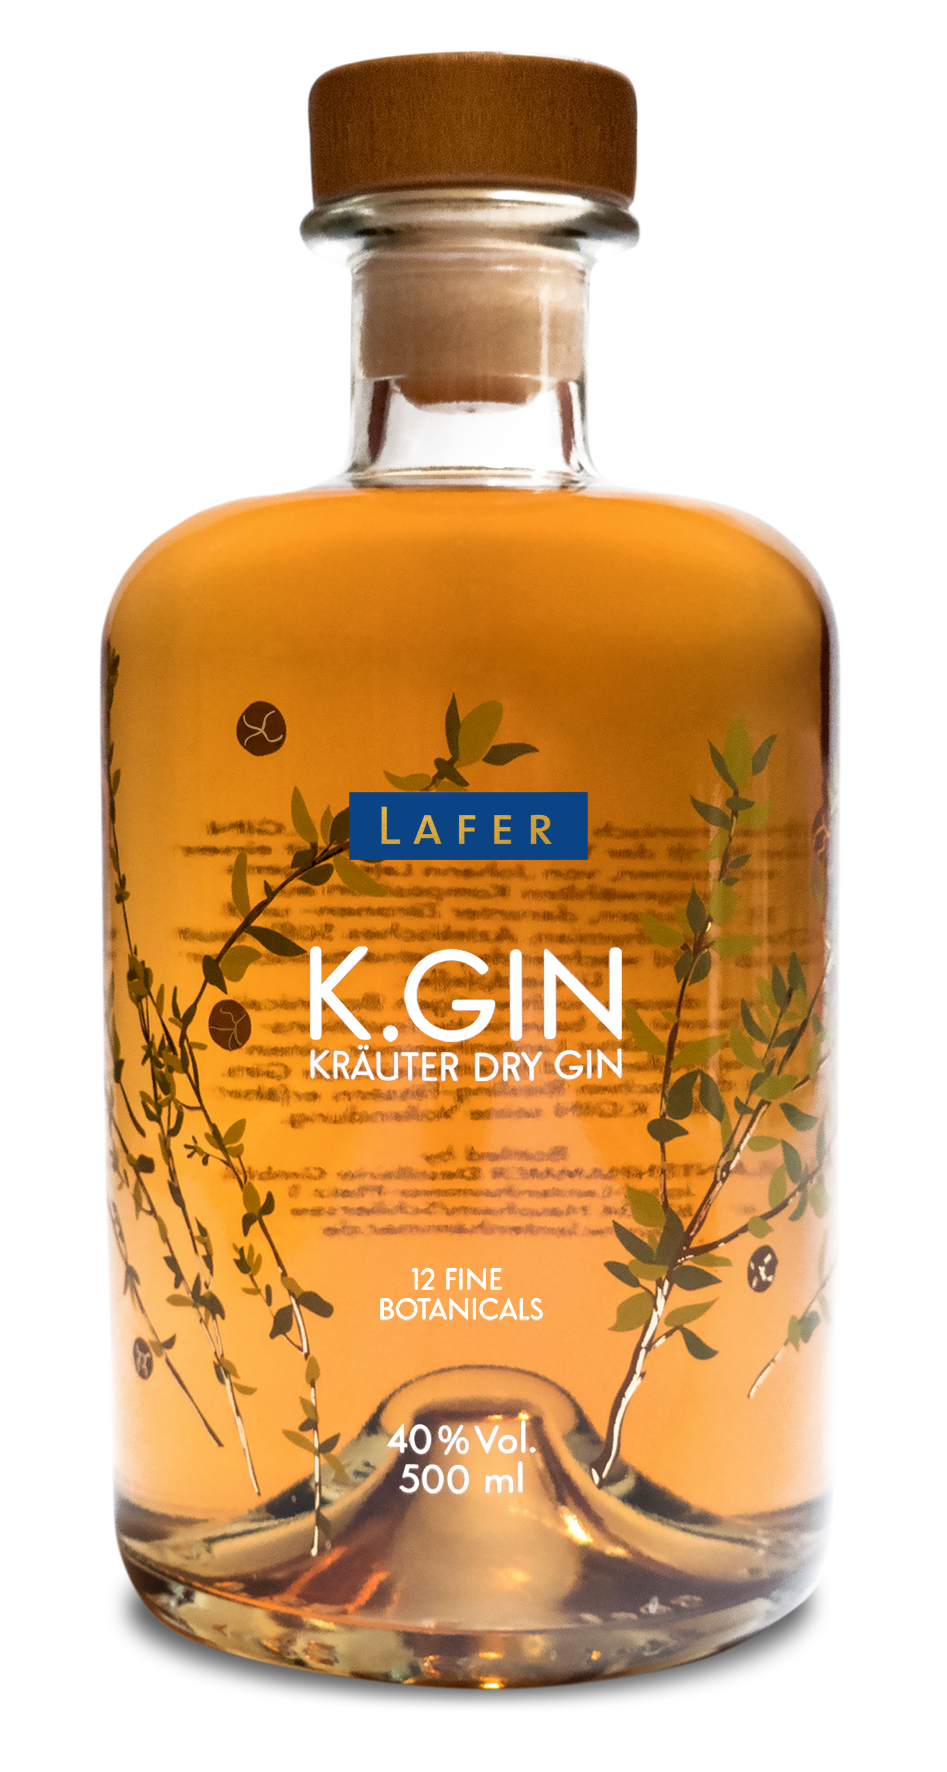 K.Gin Kräuter Dry Gin Wacholder | Express kaufen online